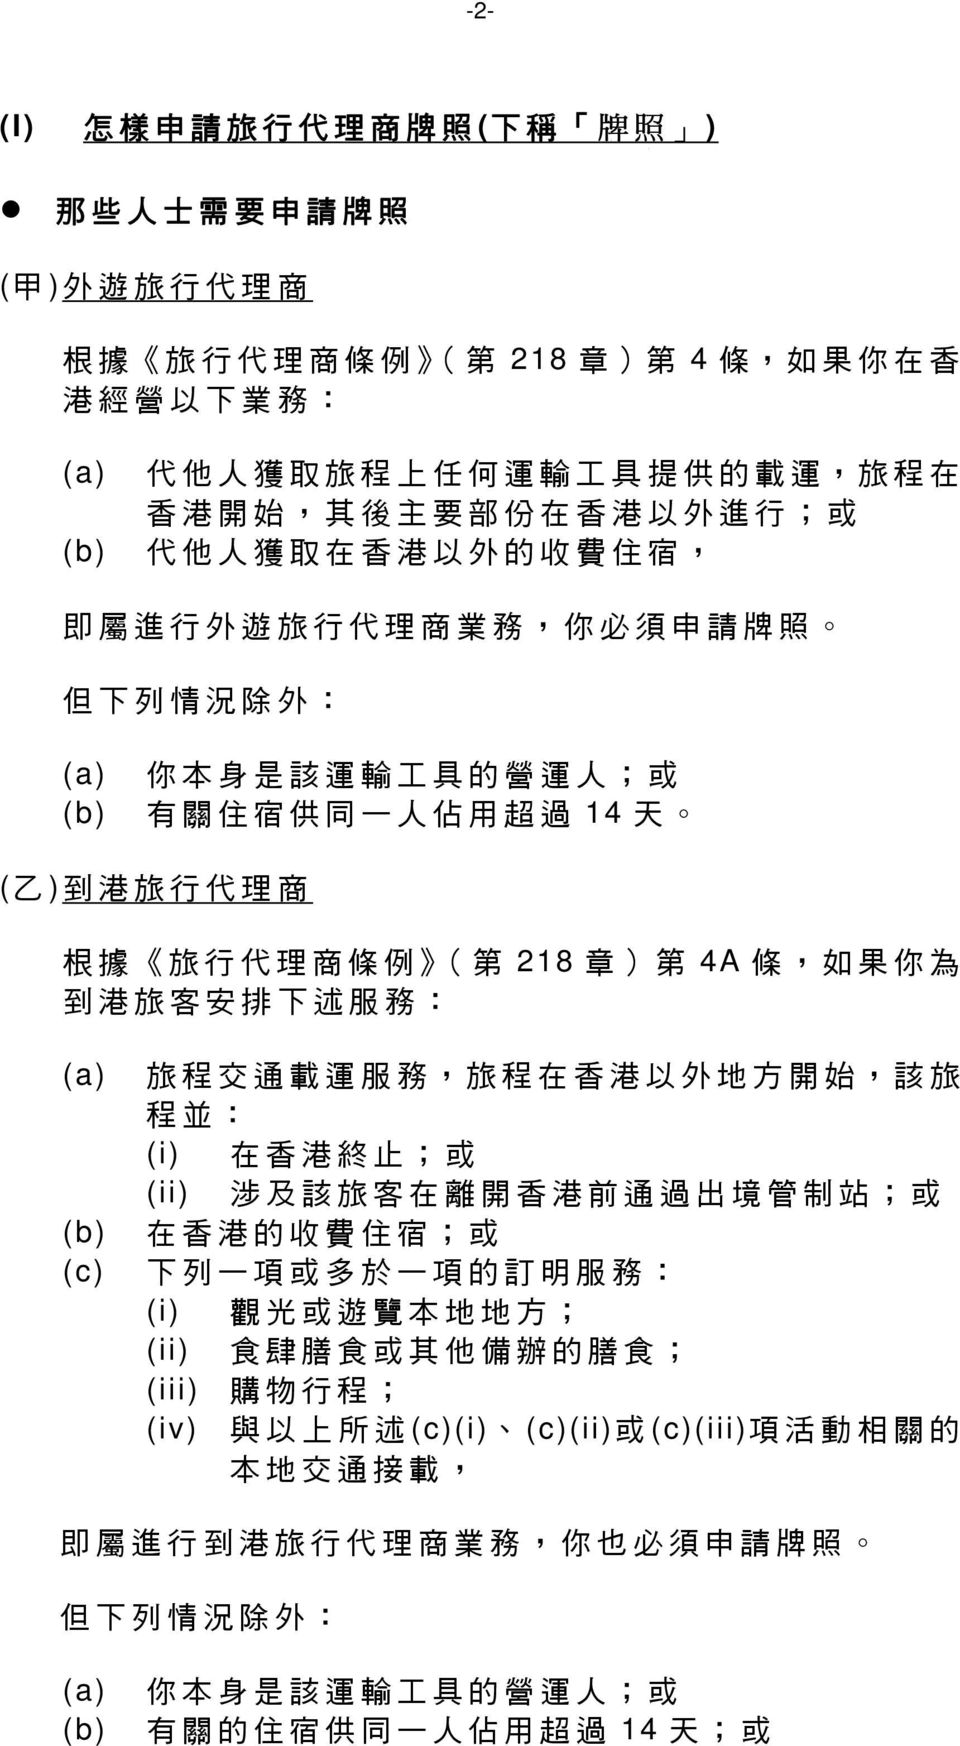 港 旅 行 代 理 商 根 據 旅 行 代 理 商 條 例 ( 第 218 章 ) 第 4A 條, 如 果 你 為 到 港 旅 客 安 排 下 述 服 務 : (a) 旅 程 交 通 載 運 服 務, 旅 程 在 香 港 以 外 地 方 開 始, 該 旅 程 並 : (i) 在 香 港 終 止 ; 或 (ii) 涉 及 該 旅 客 在 離 開 香 港 前 通 過 出 境 管 制 站 ; 或